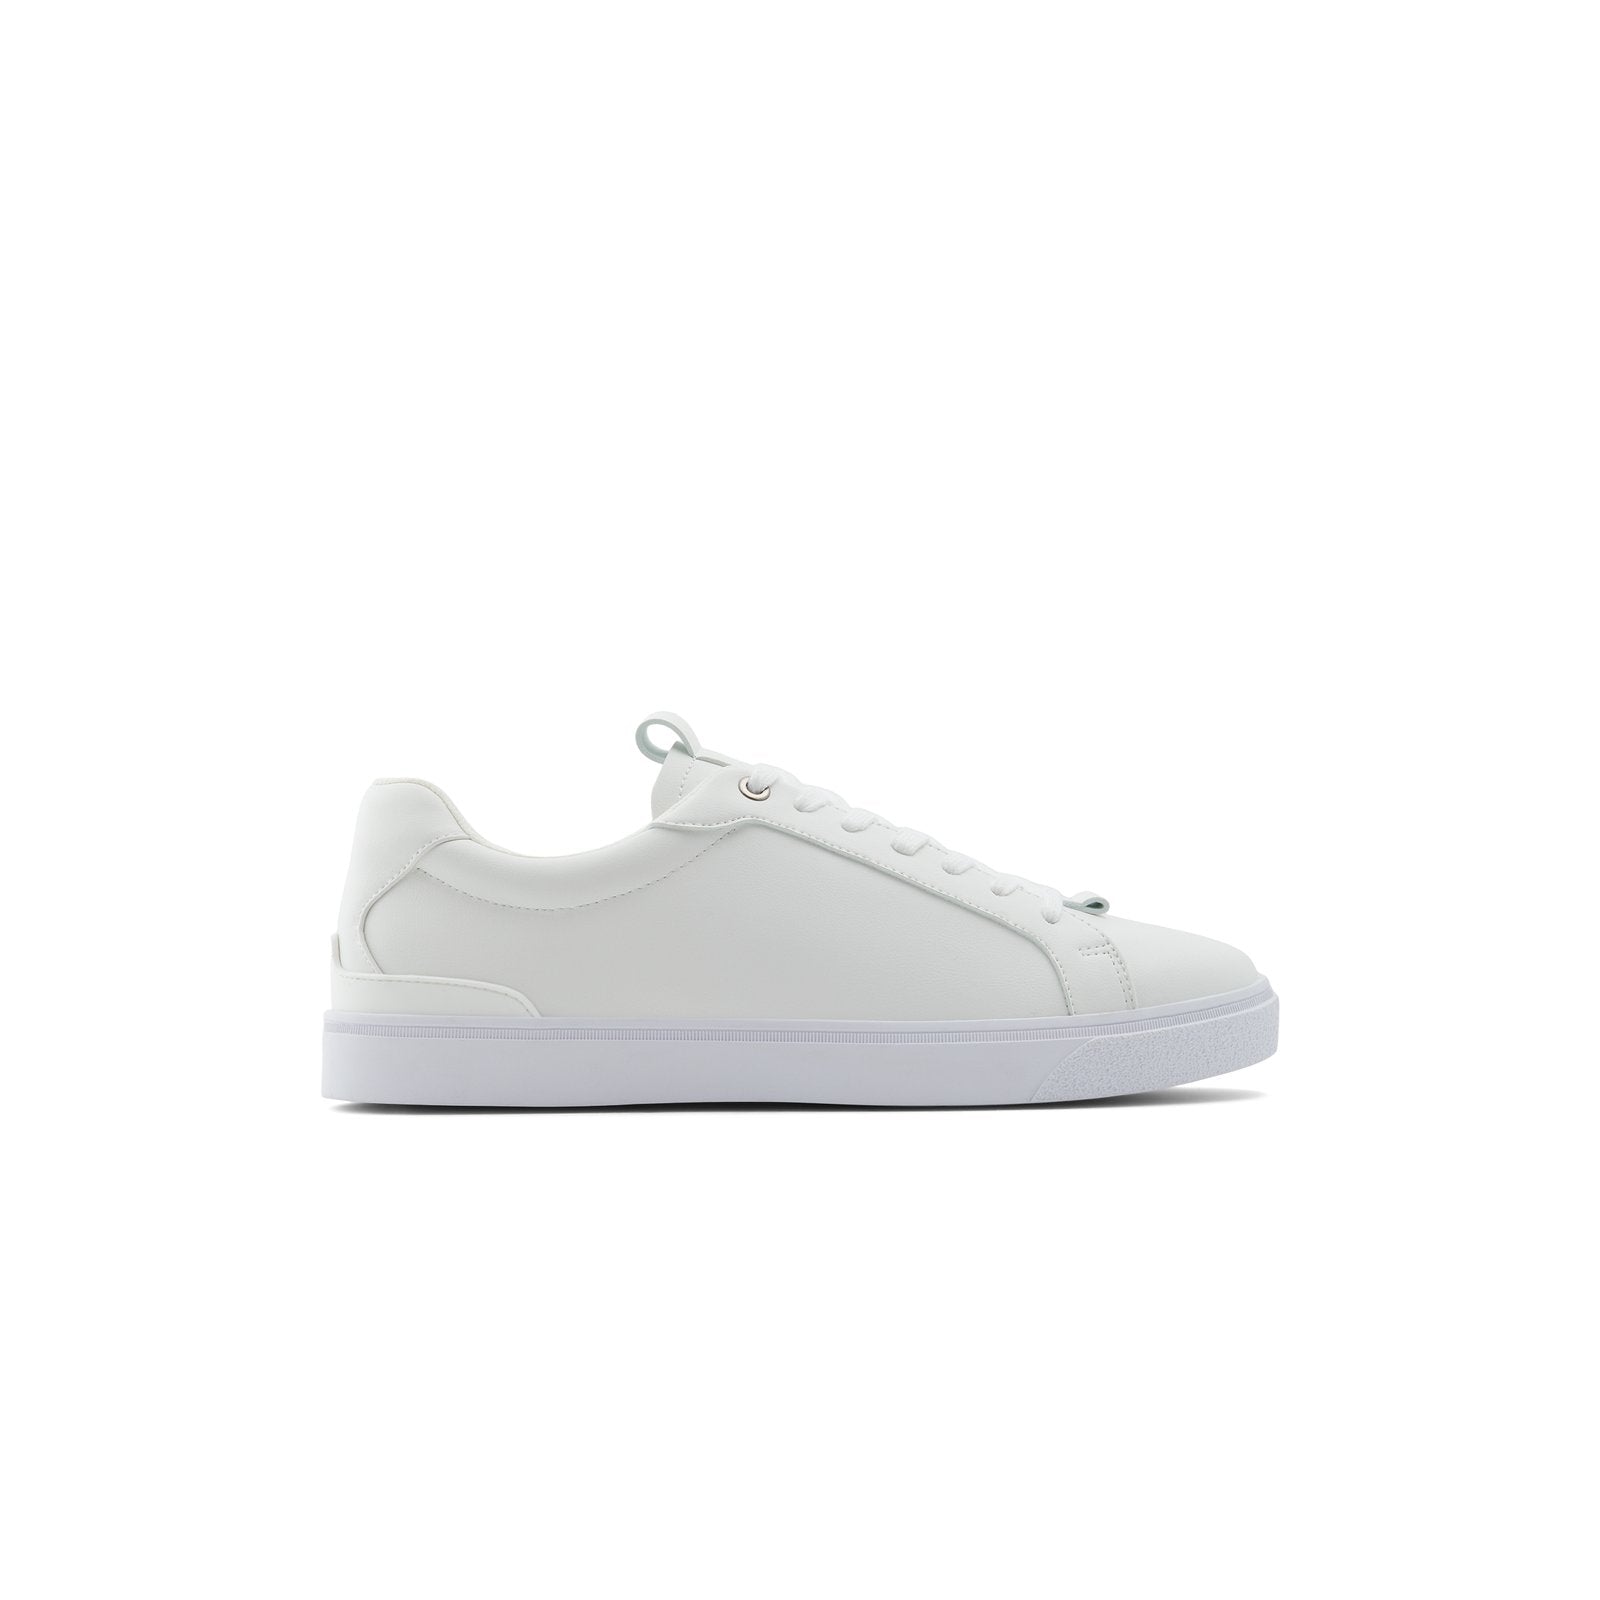 Piedmont Men Shoes - White - CALL IT SPRING KSA